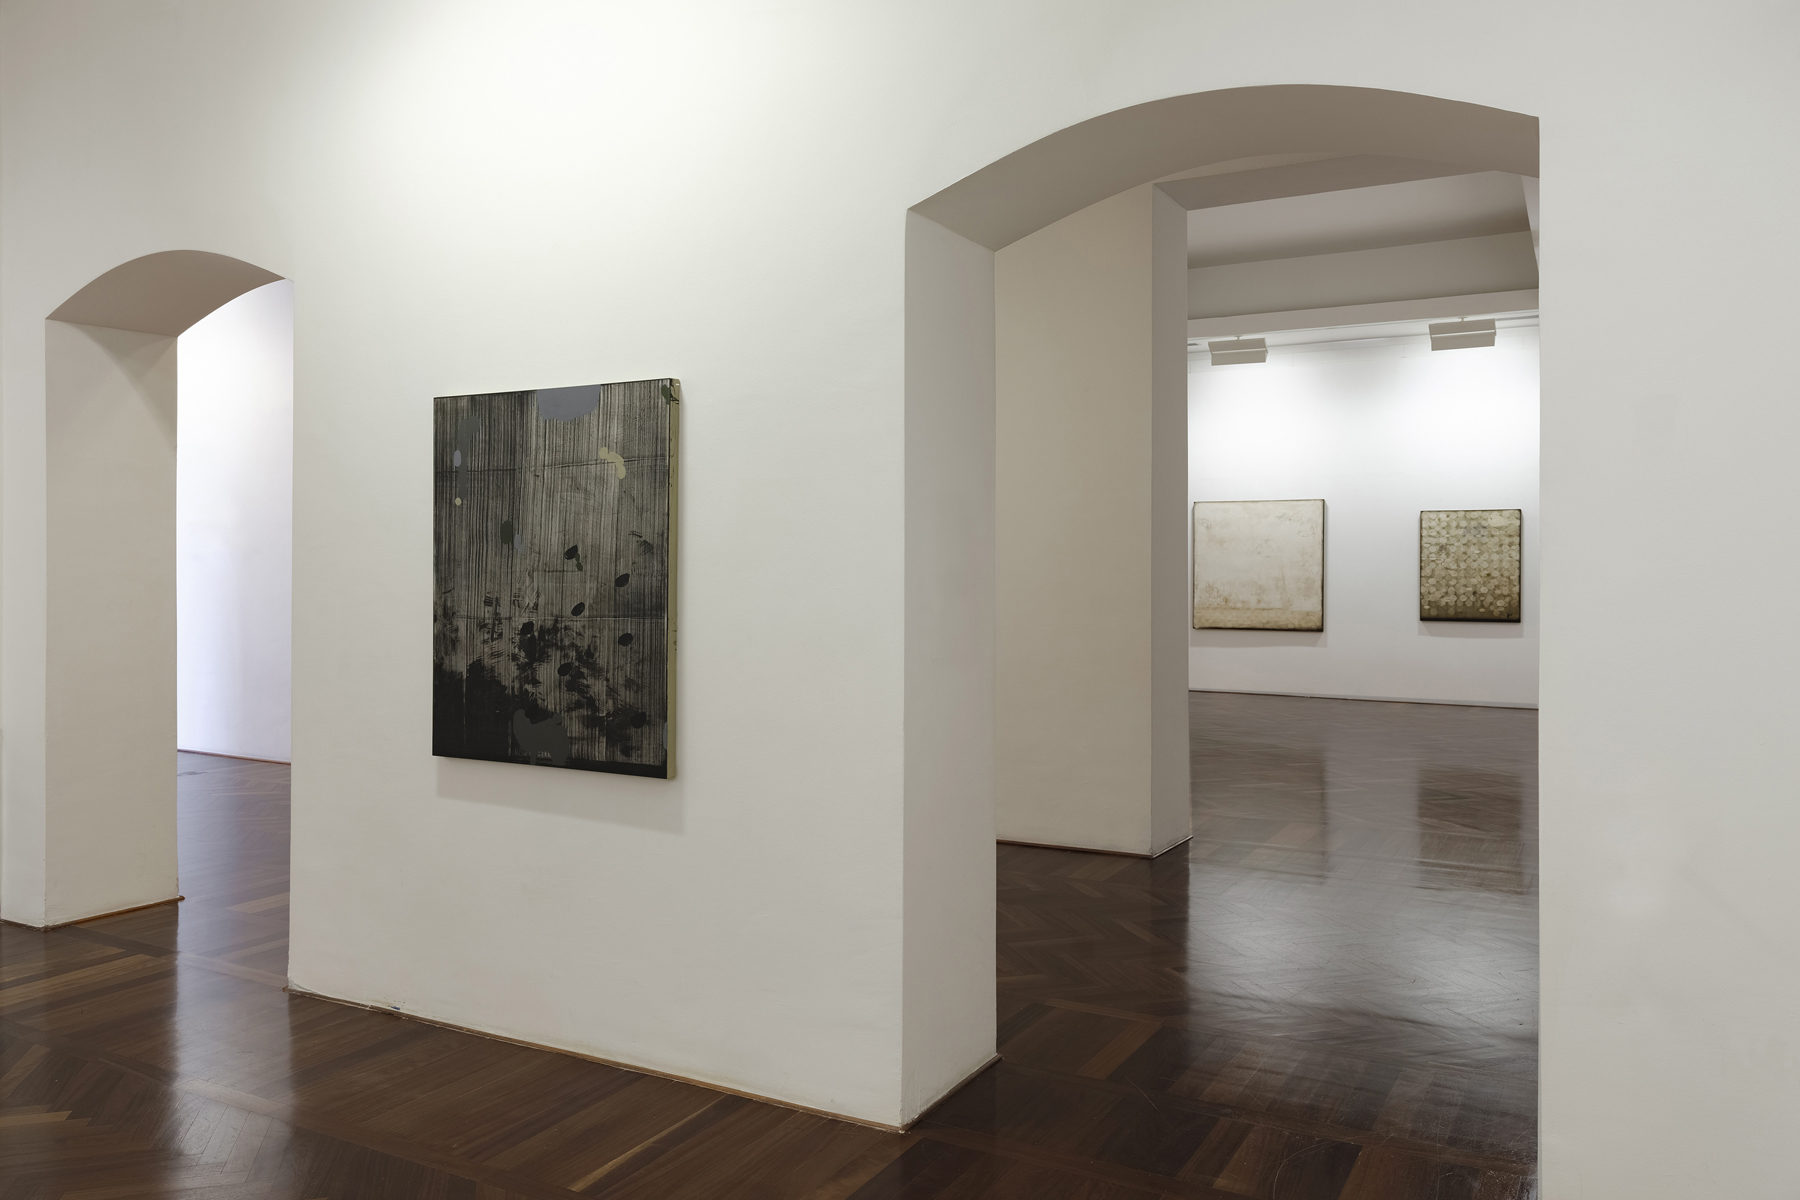 Mirko Baricchi, Derive, 2017, installation view, CAMeC, La Spezia